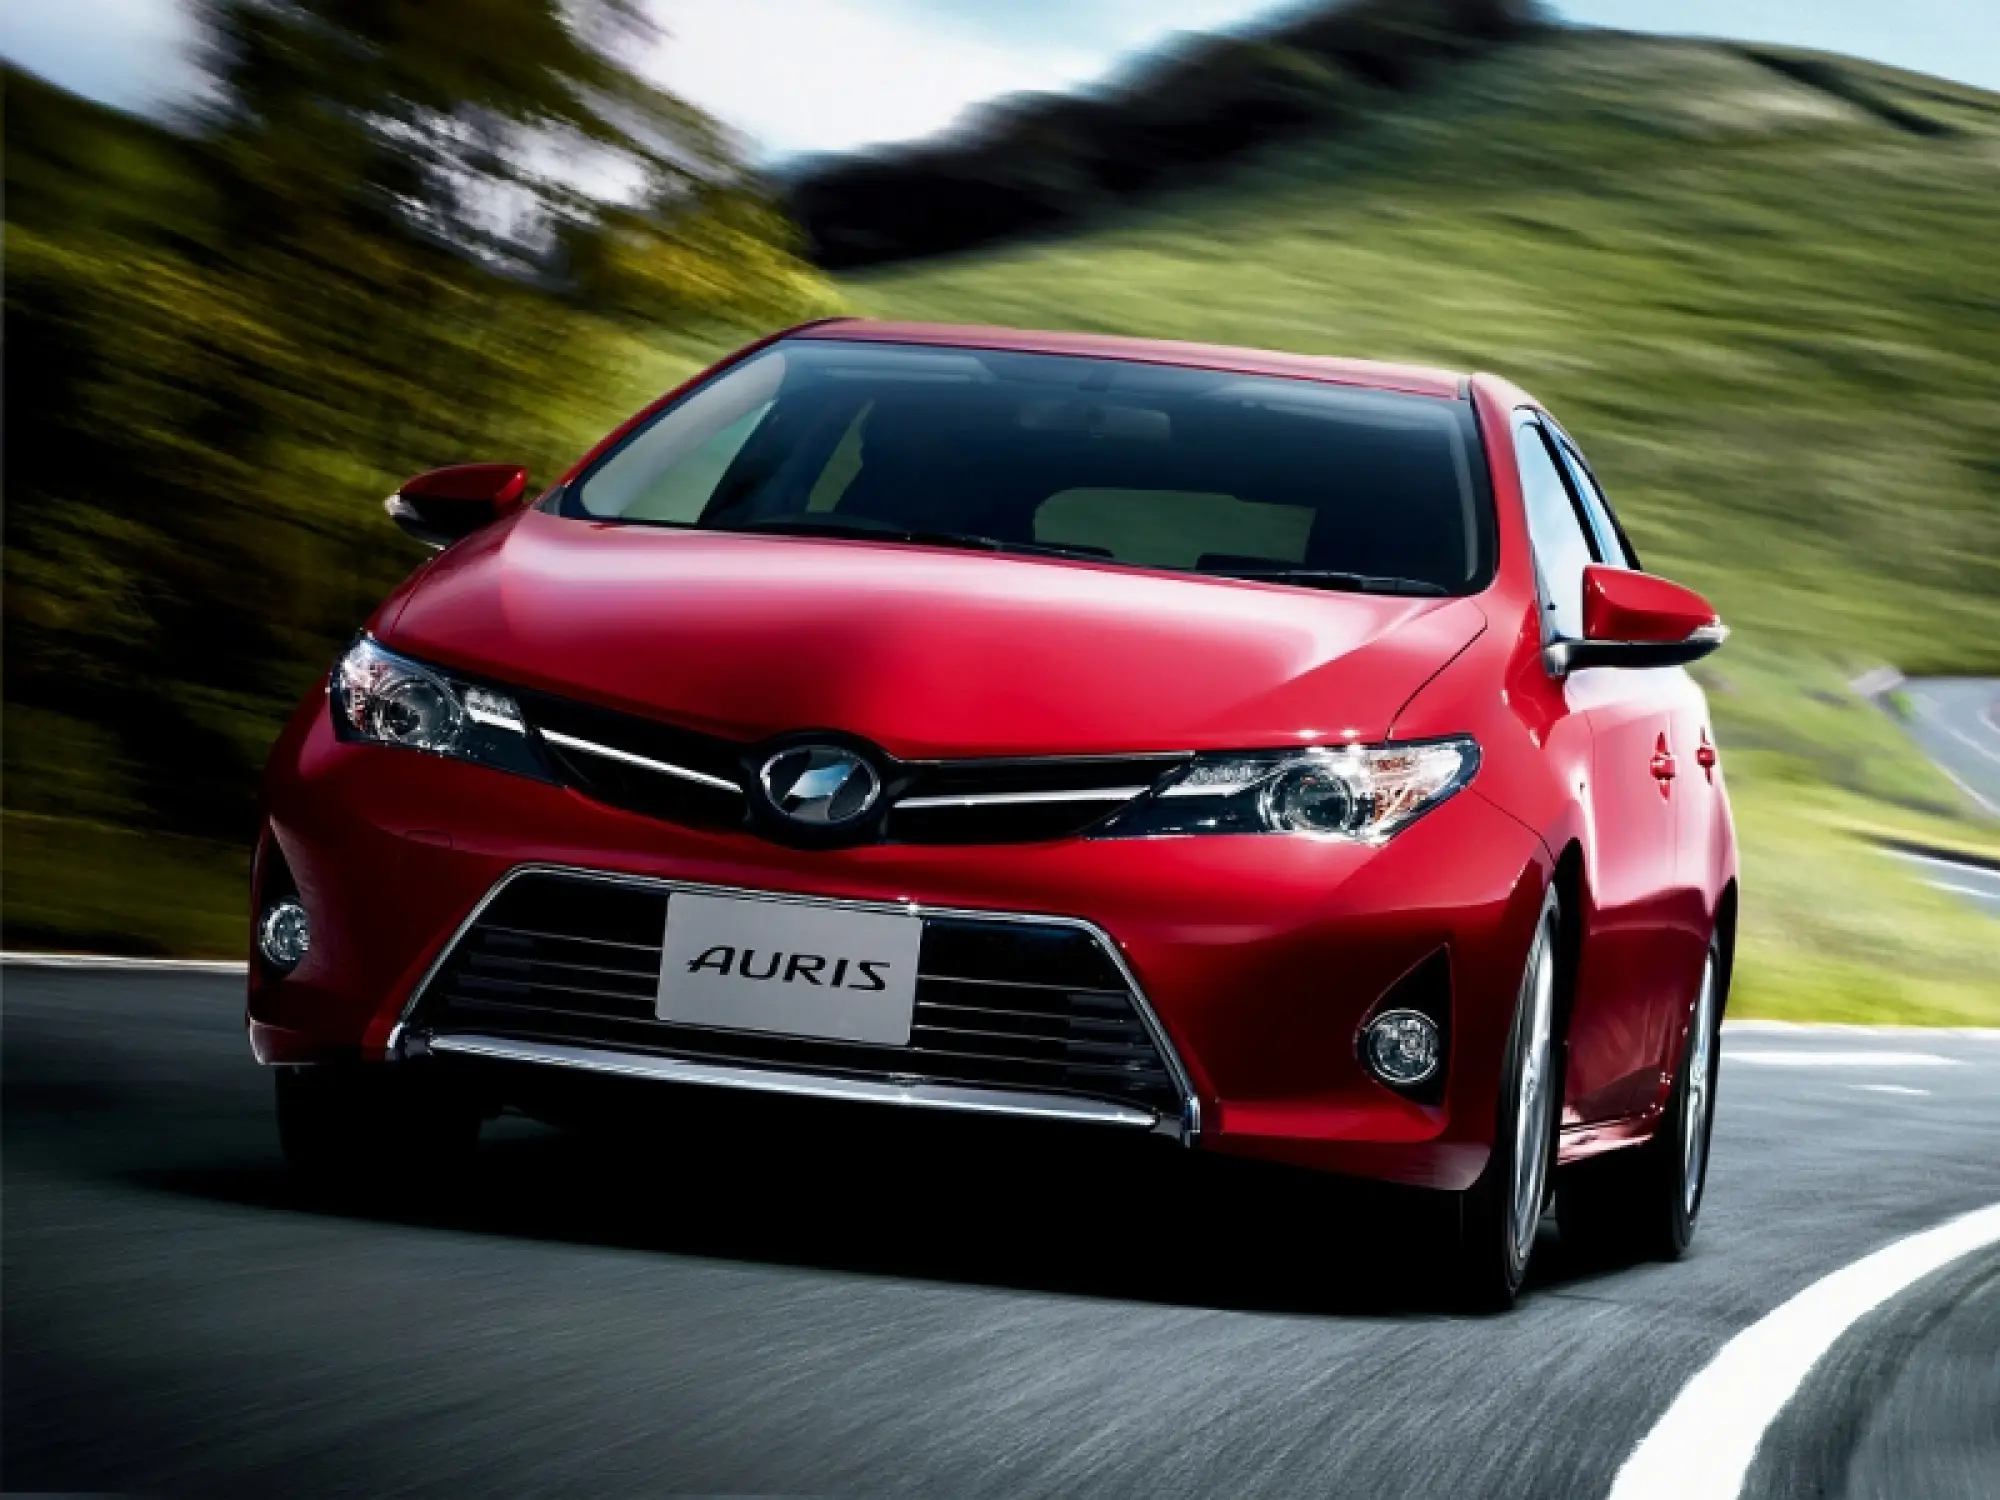 Toyota Auris 2013 foto ufficiali - 7